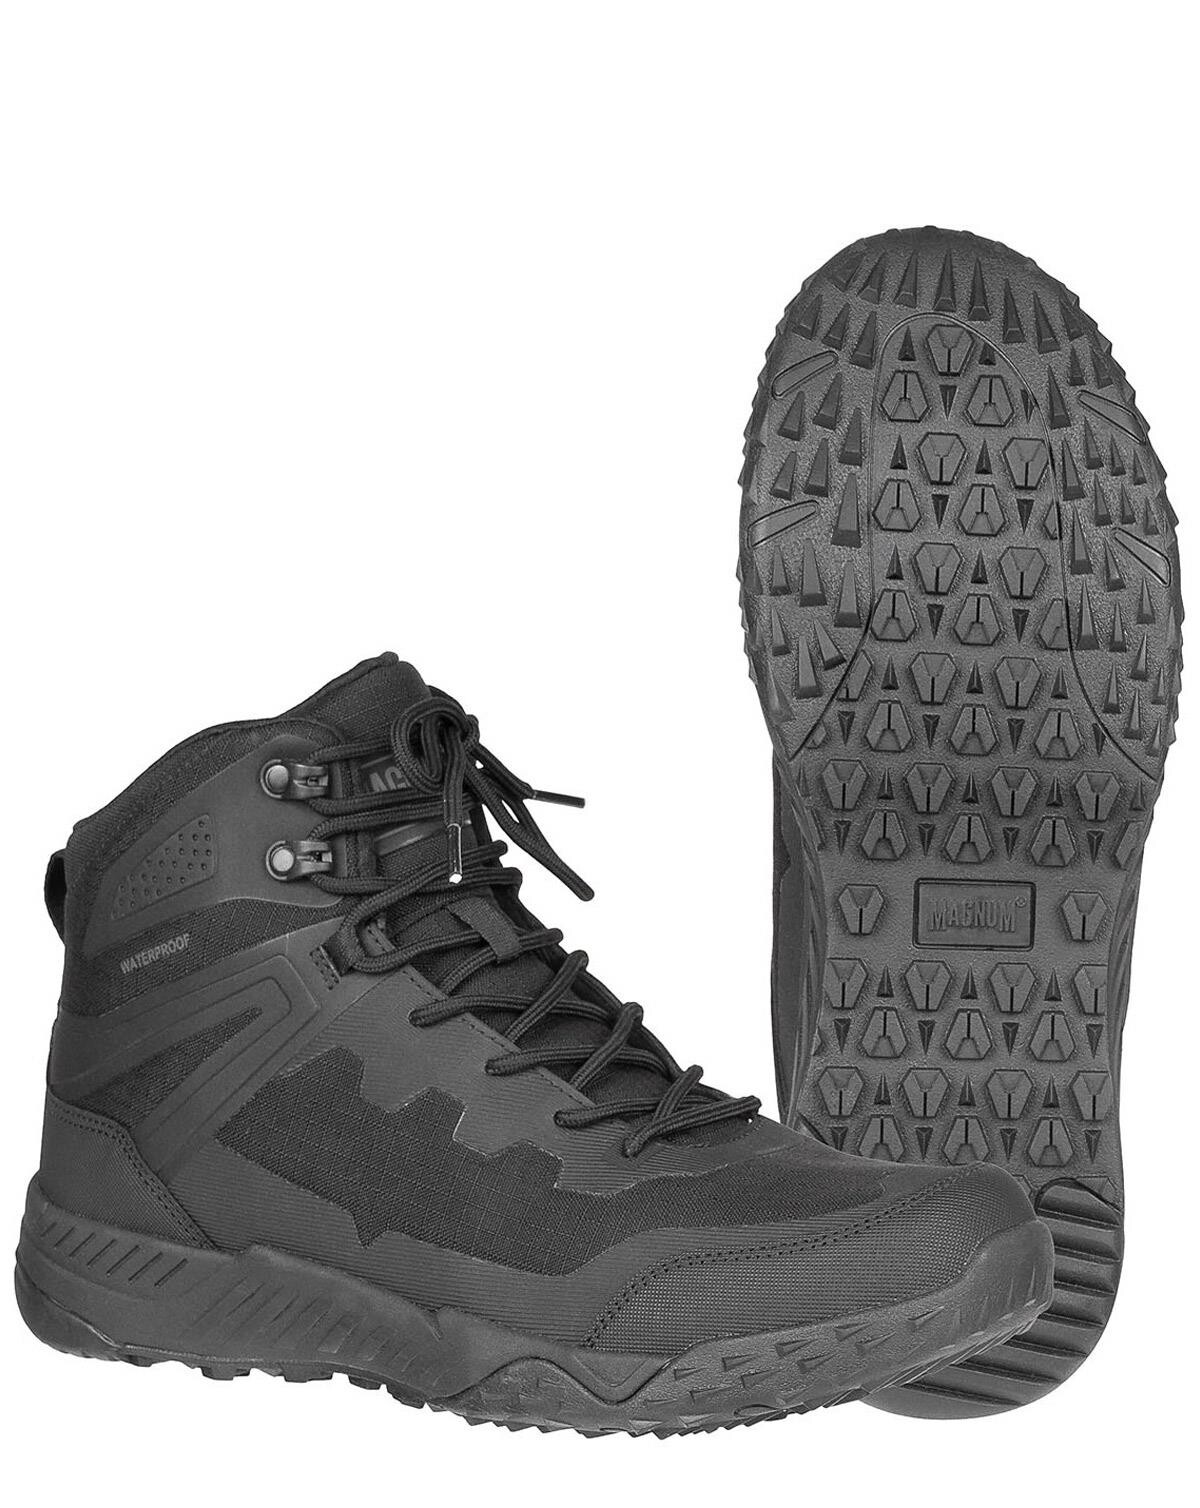 Army Footwear for men | Military footwear | Army Star